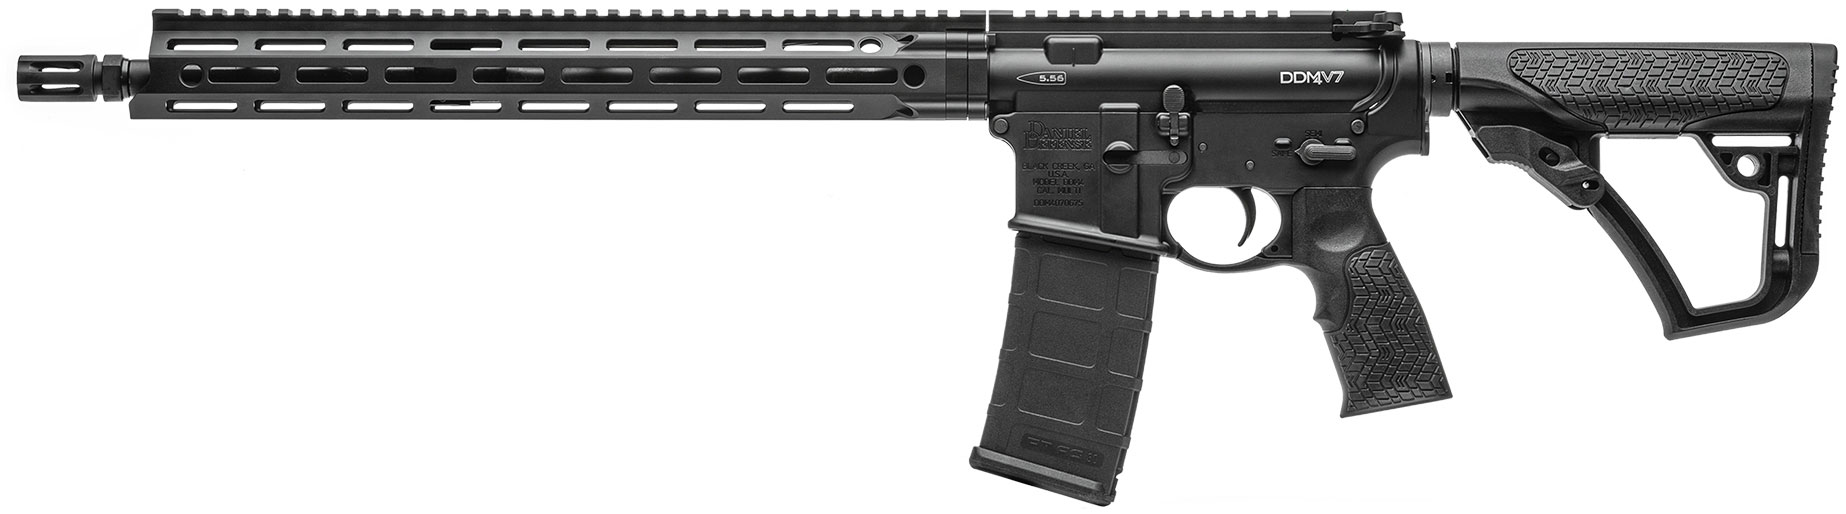 Daniel Defense DDM4 V7 Rifle 0212802081047, 223 Remington/5.56 NATO, 16